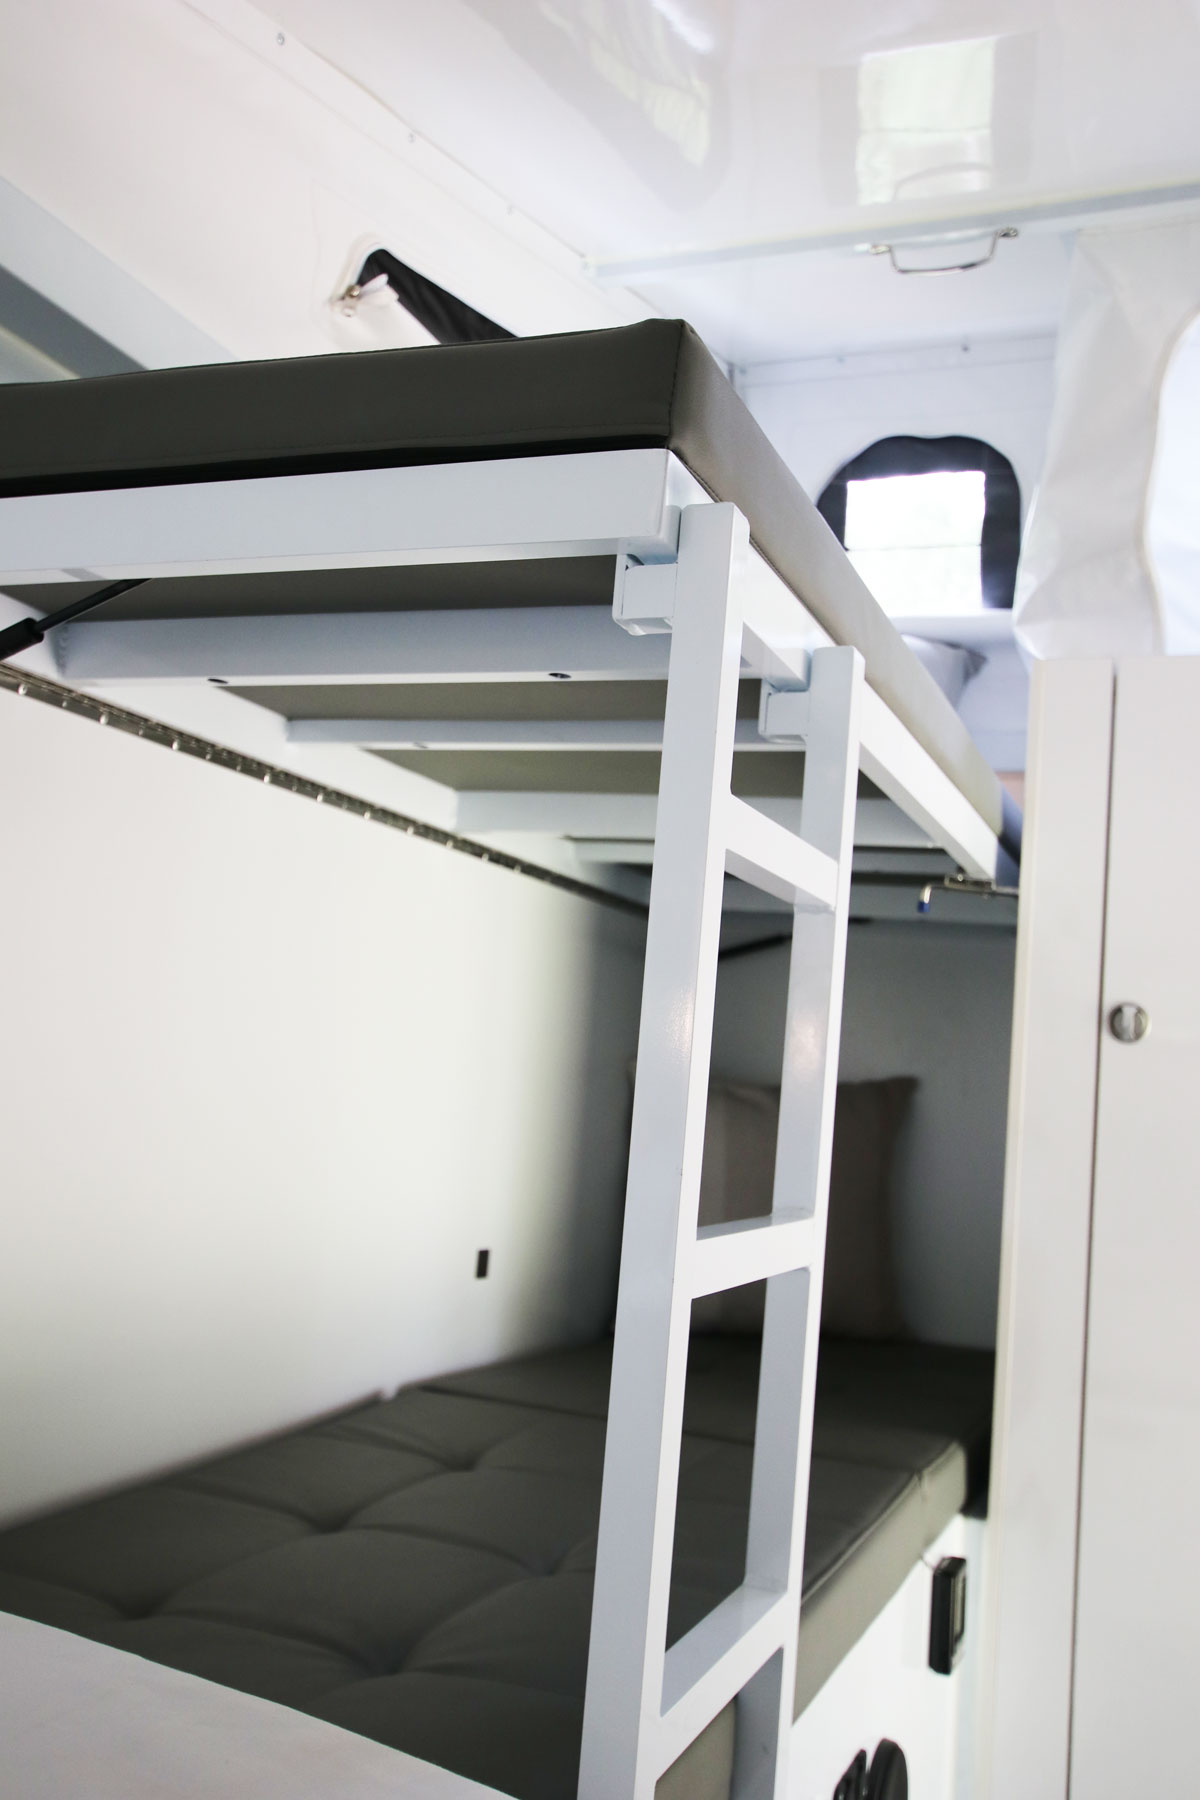 C3P bunk beds